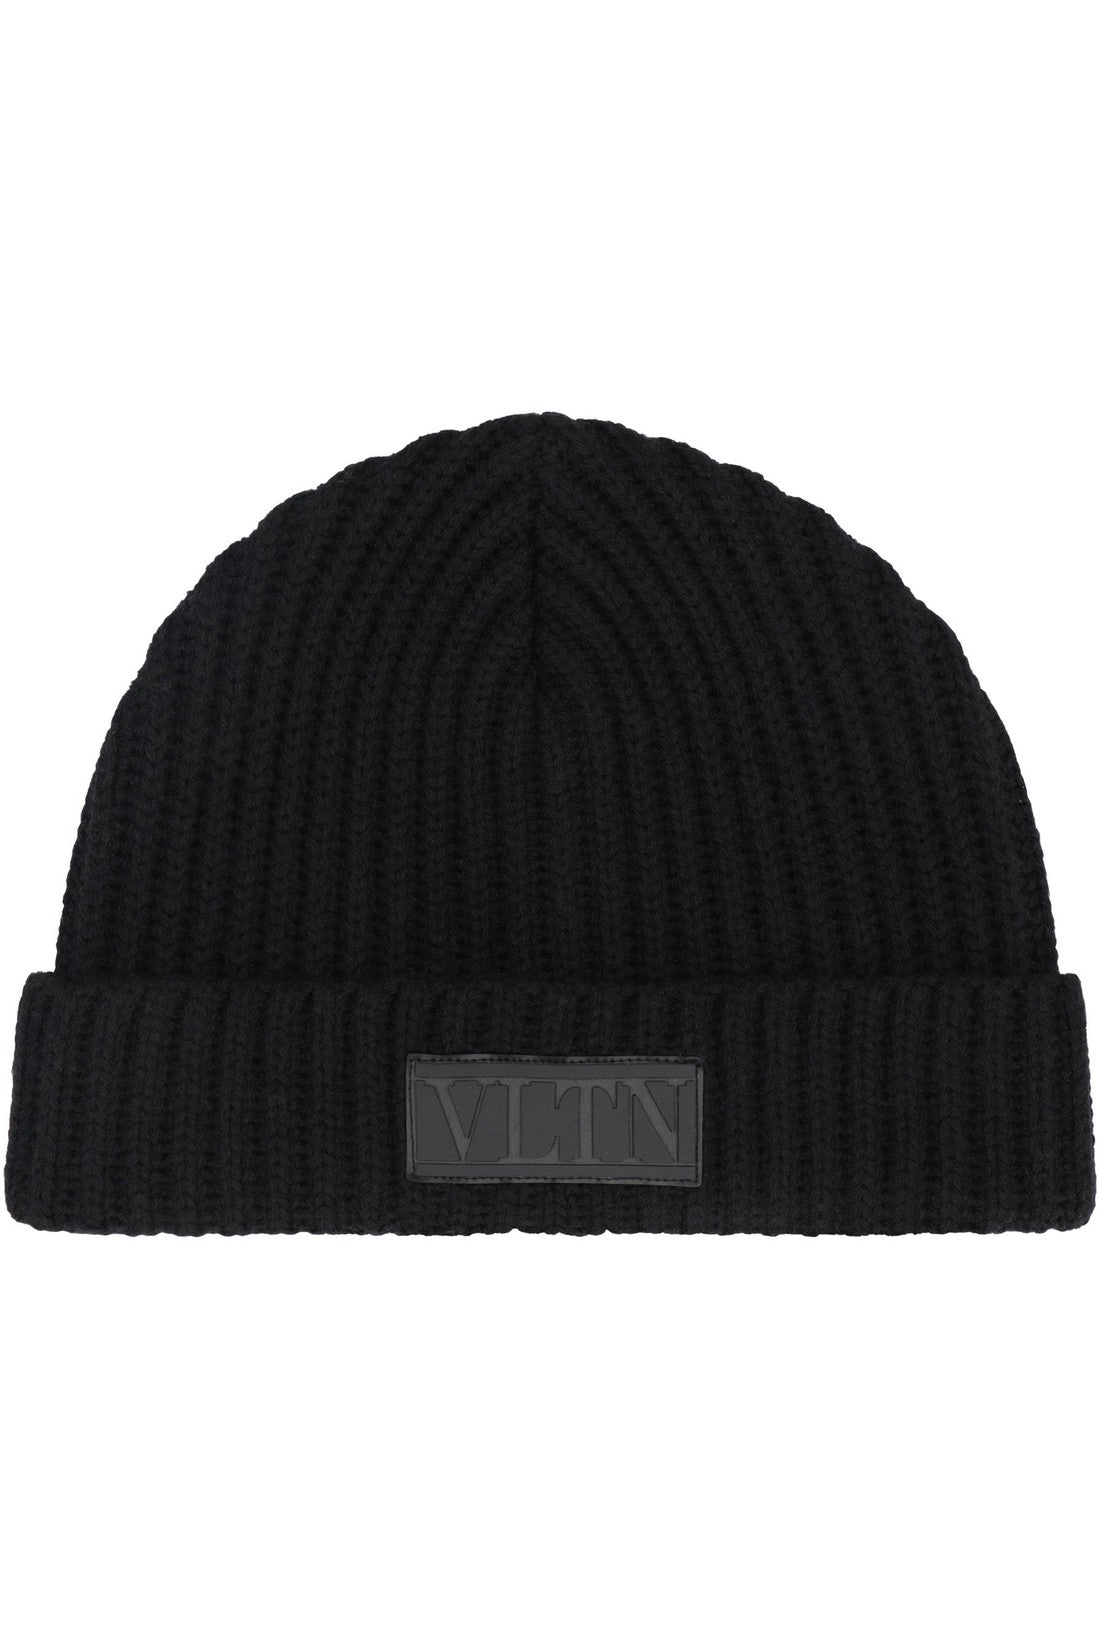 Valentino-OUTLET-SALE-Valentino Garavani - Knitted virgin wool hat-ARCHIVIST